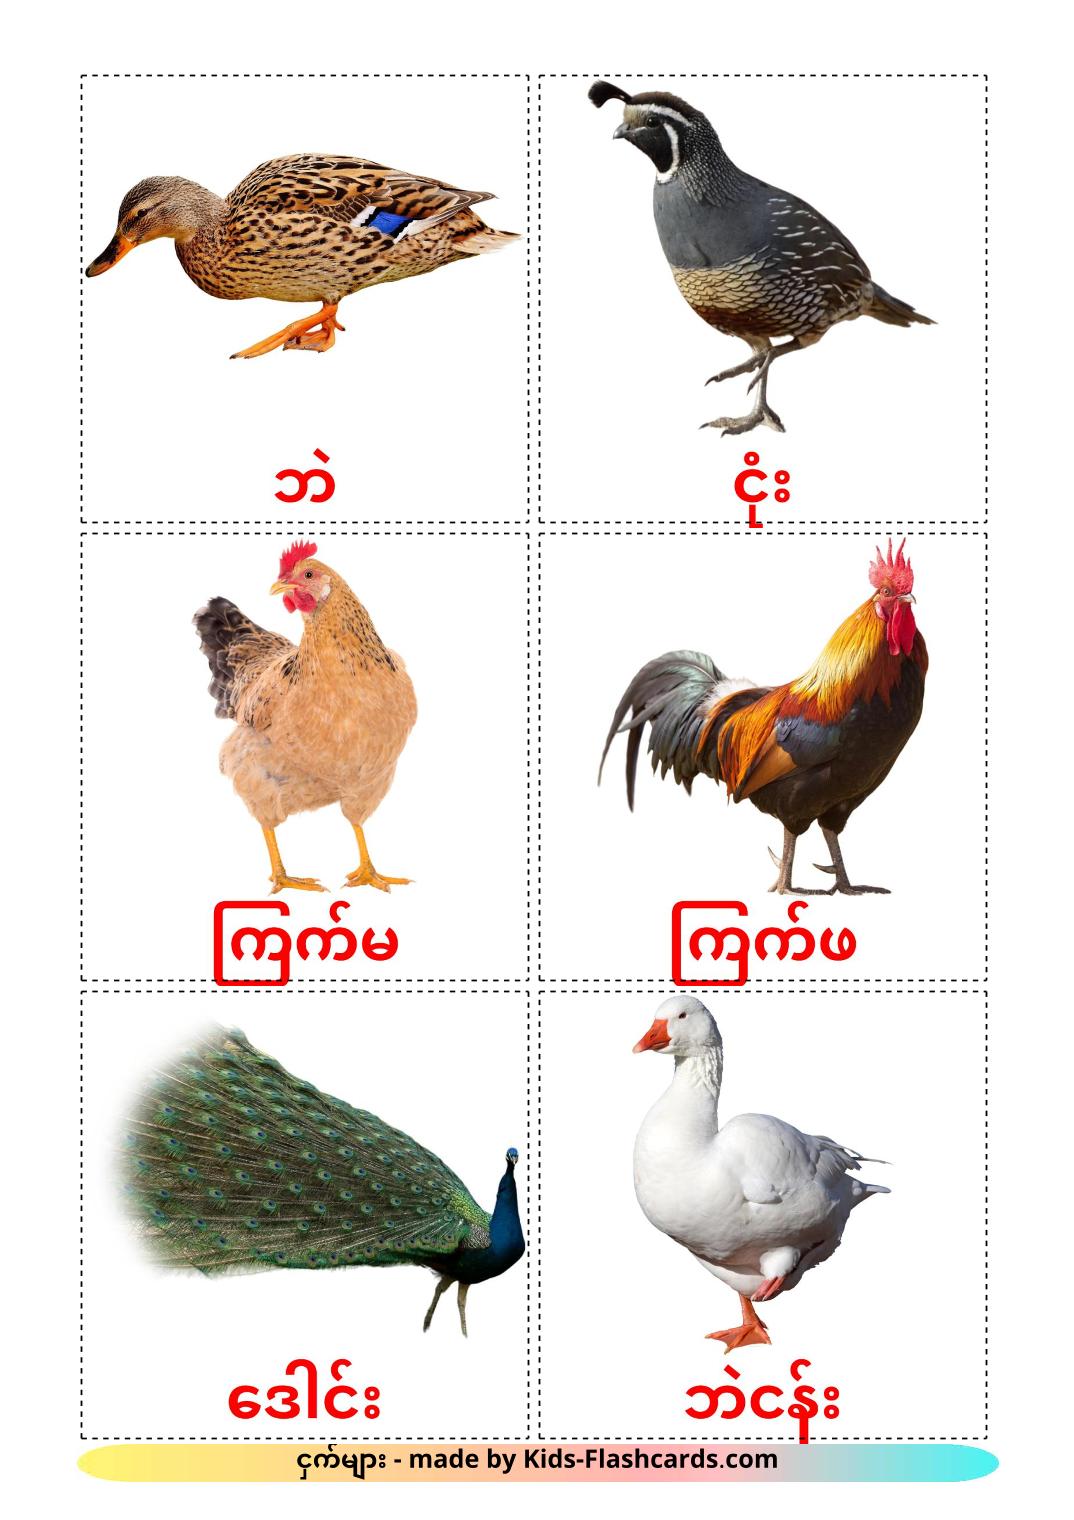 Aves da Quinta - 11 Flashcards burmêses gratuitos para impressão